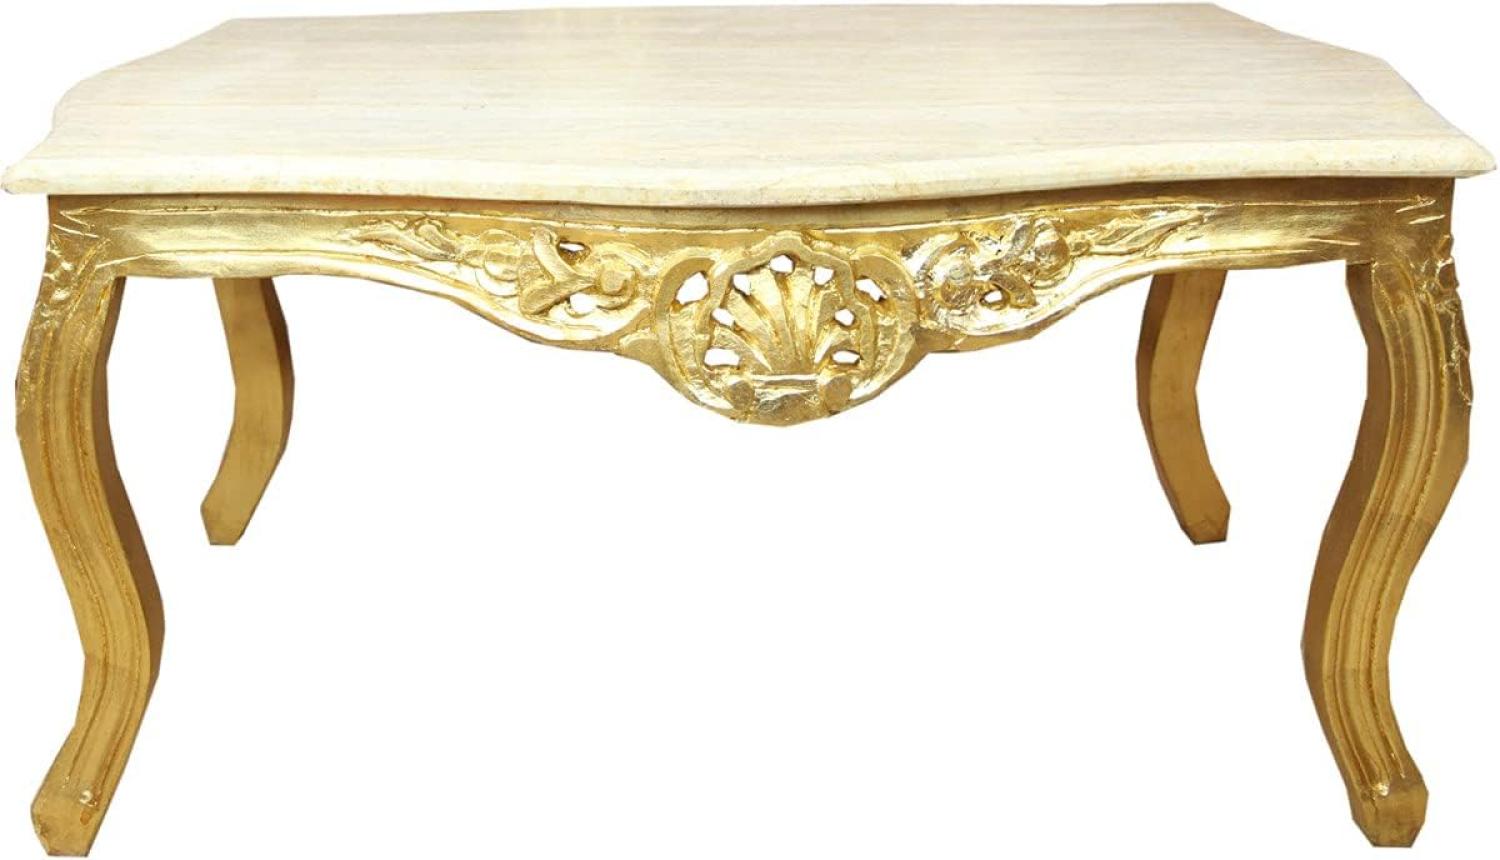 Casa Padrino Barock Couchtisch Gold mit Marmorplatte Creme - Möbel Wohnzimmer Tisch Antik Stil Bild 1